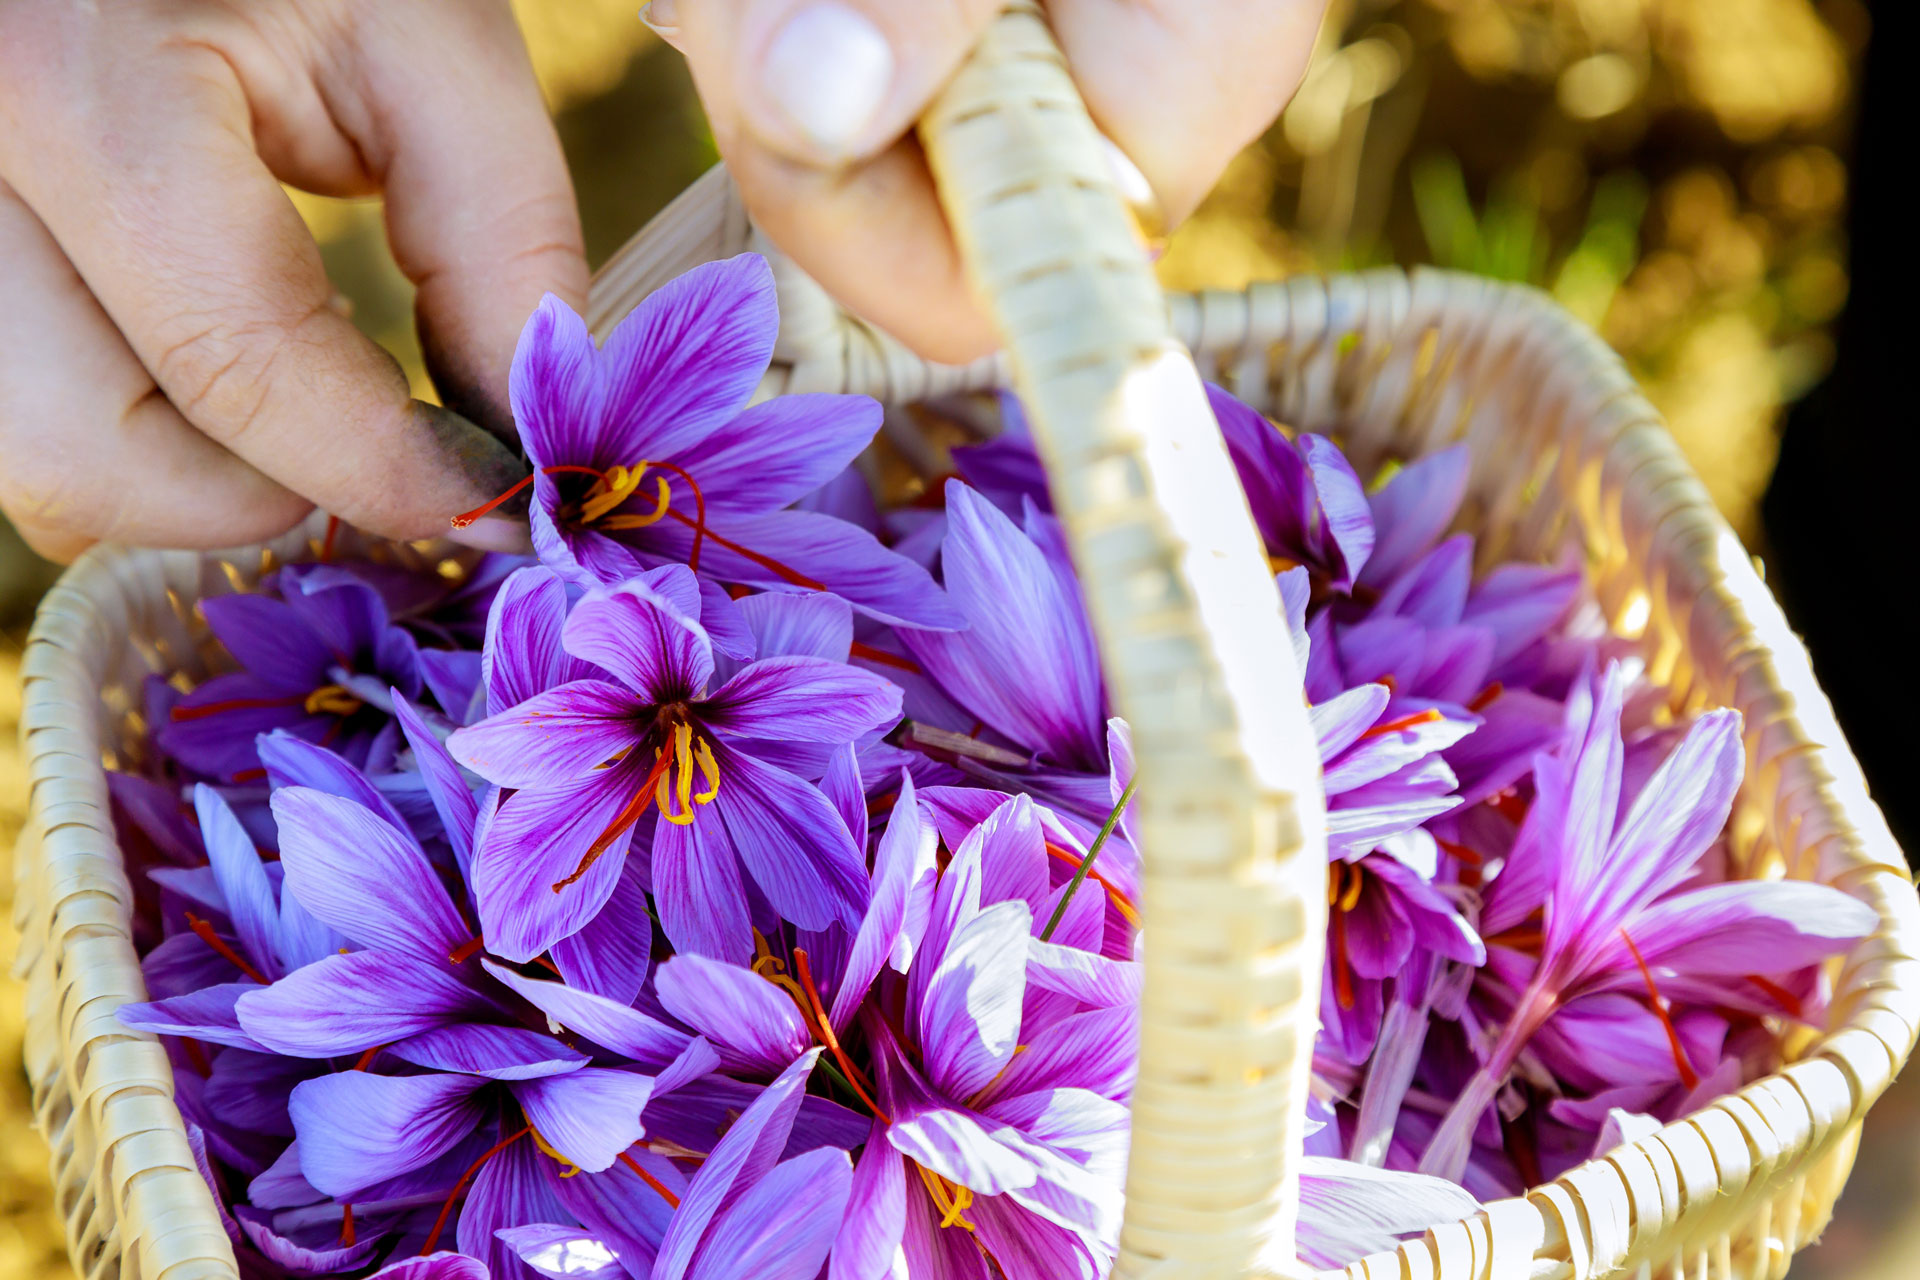 Splendidi fiori di zafferano con il loro colore viola chiaro.